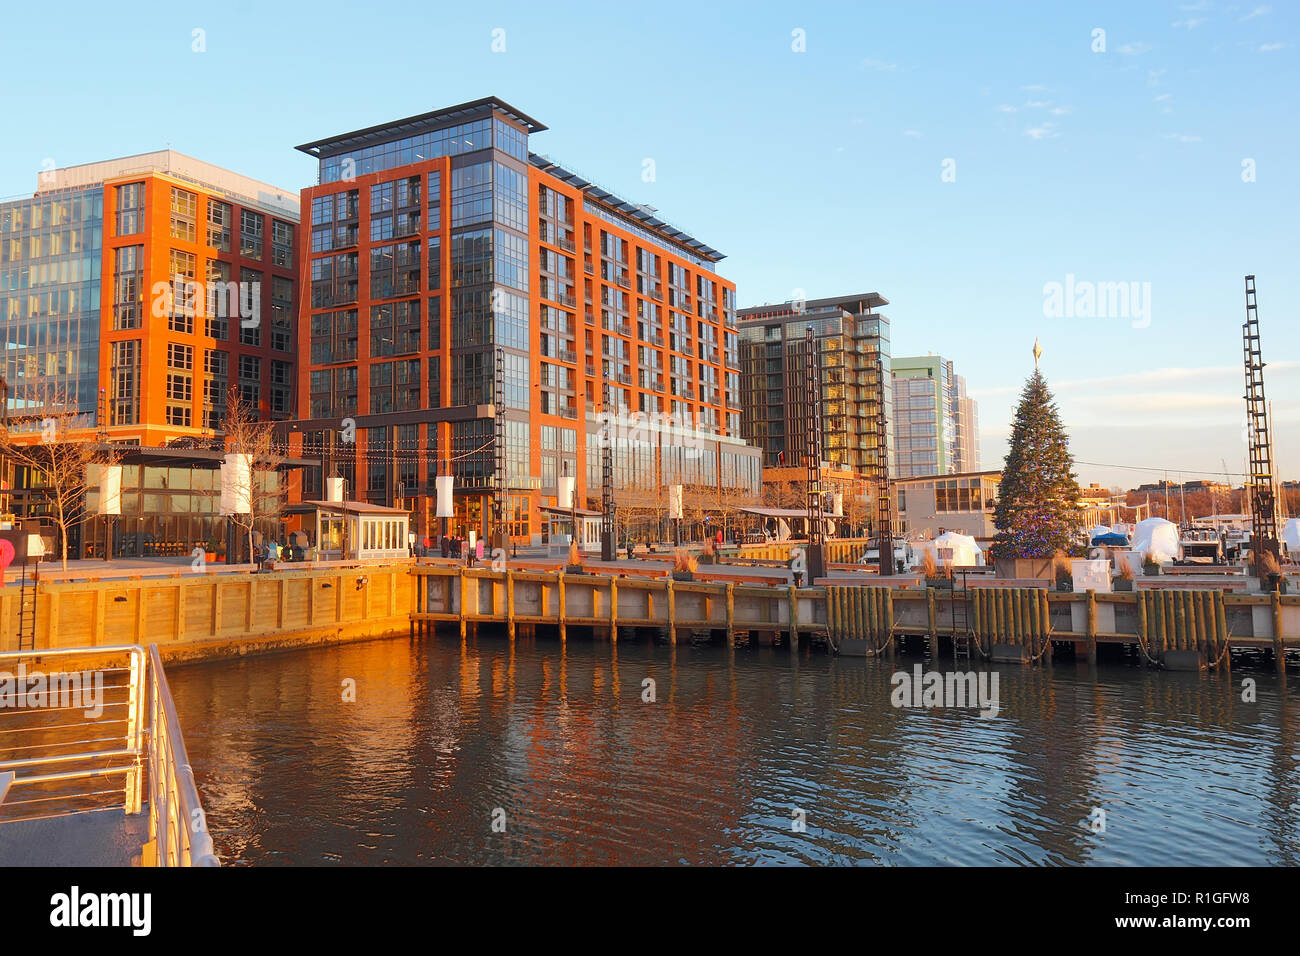 Boote und Skyline von Gebäuden im neu sanierten Südwesten Hafengebiet von Washington, DC gesehen vom Wasser mit Weihnachtsbaum im Herbst Stockfoto